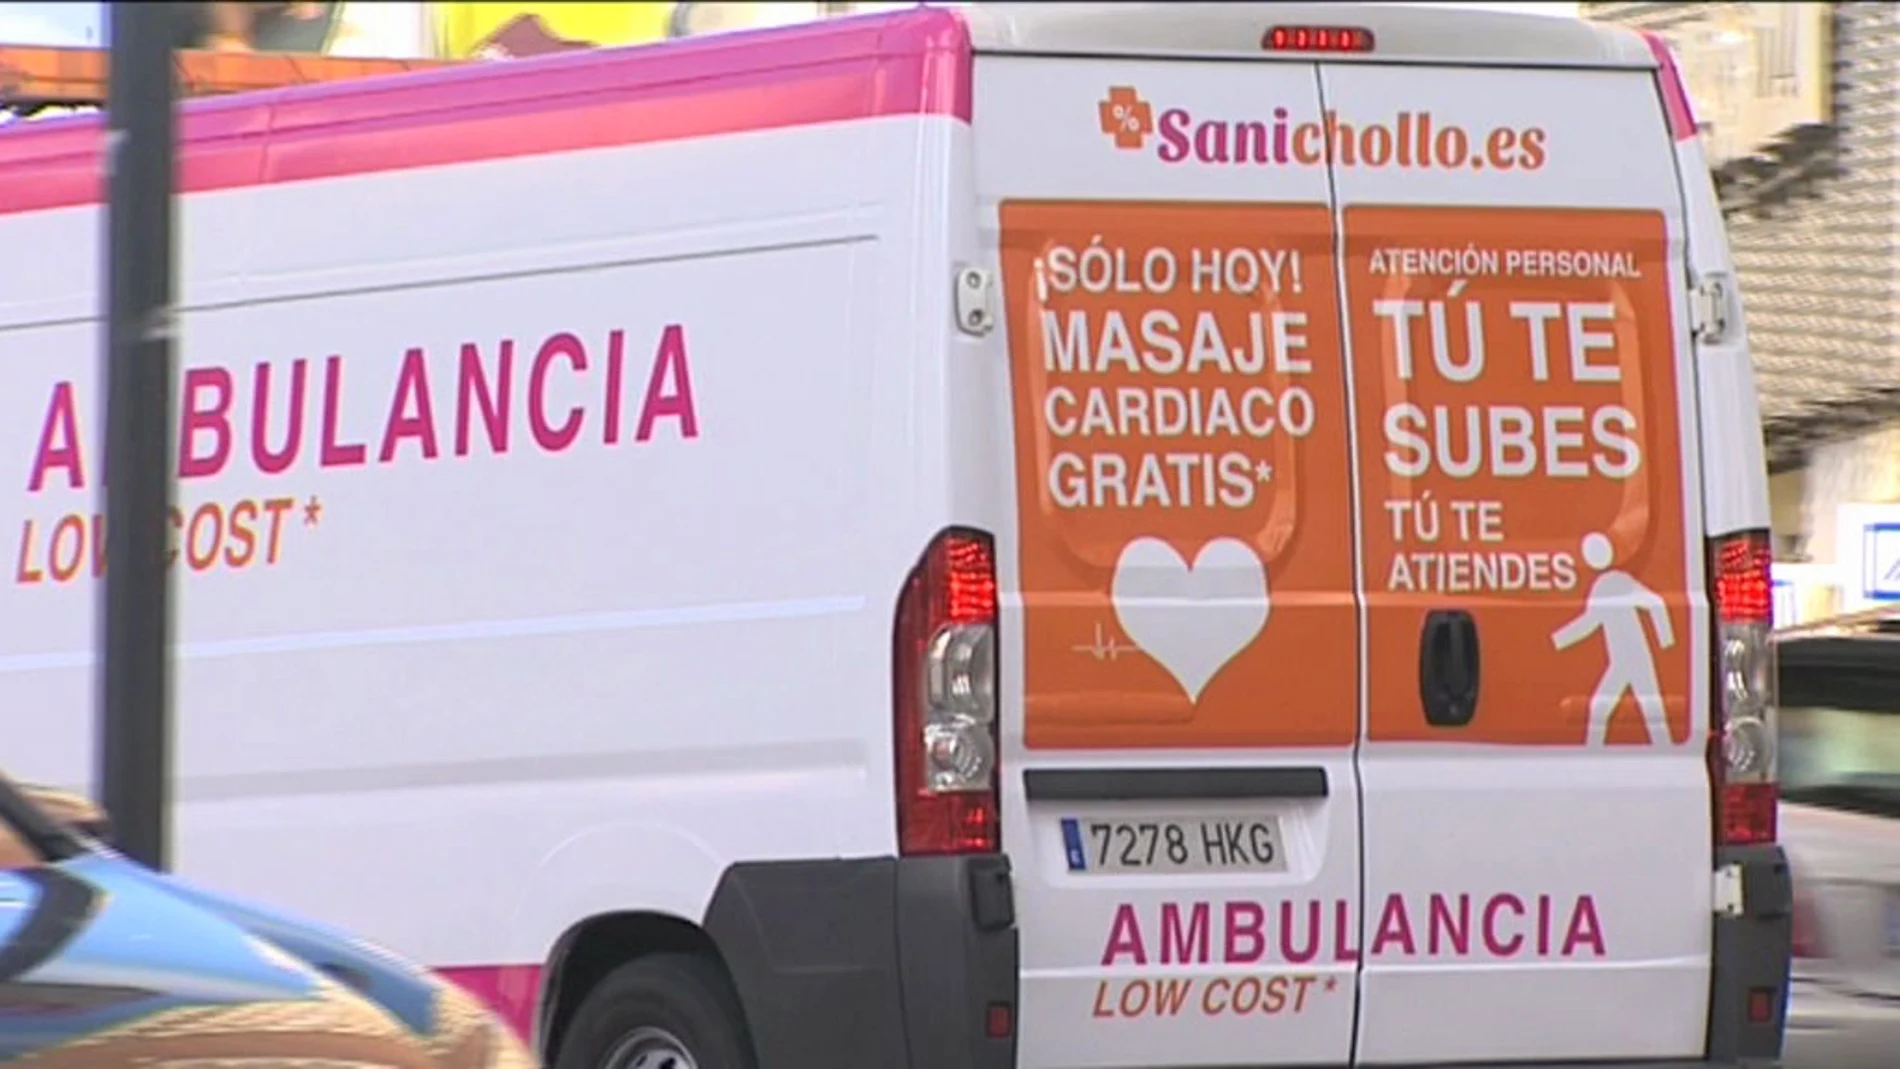 Campaña Sanichollo.es